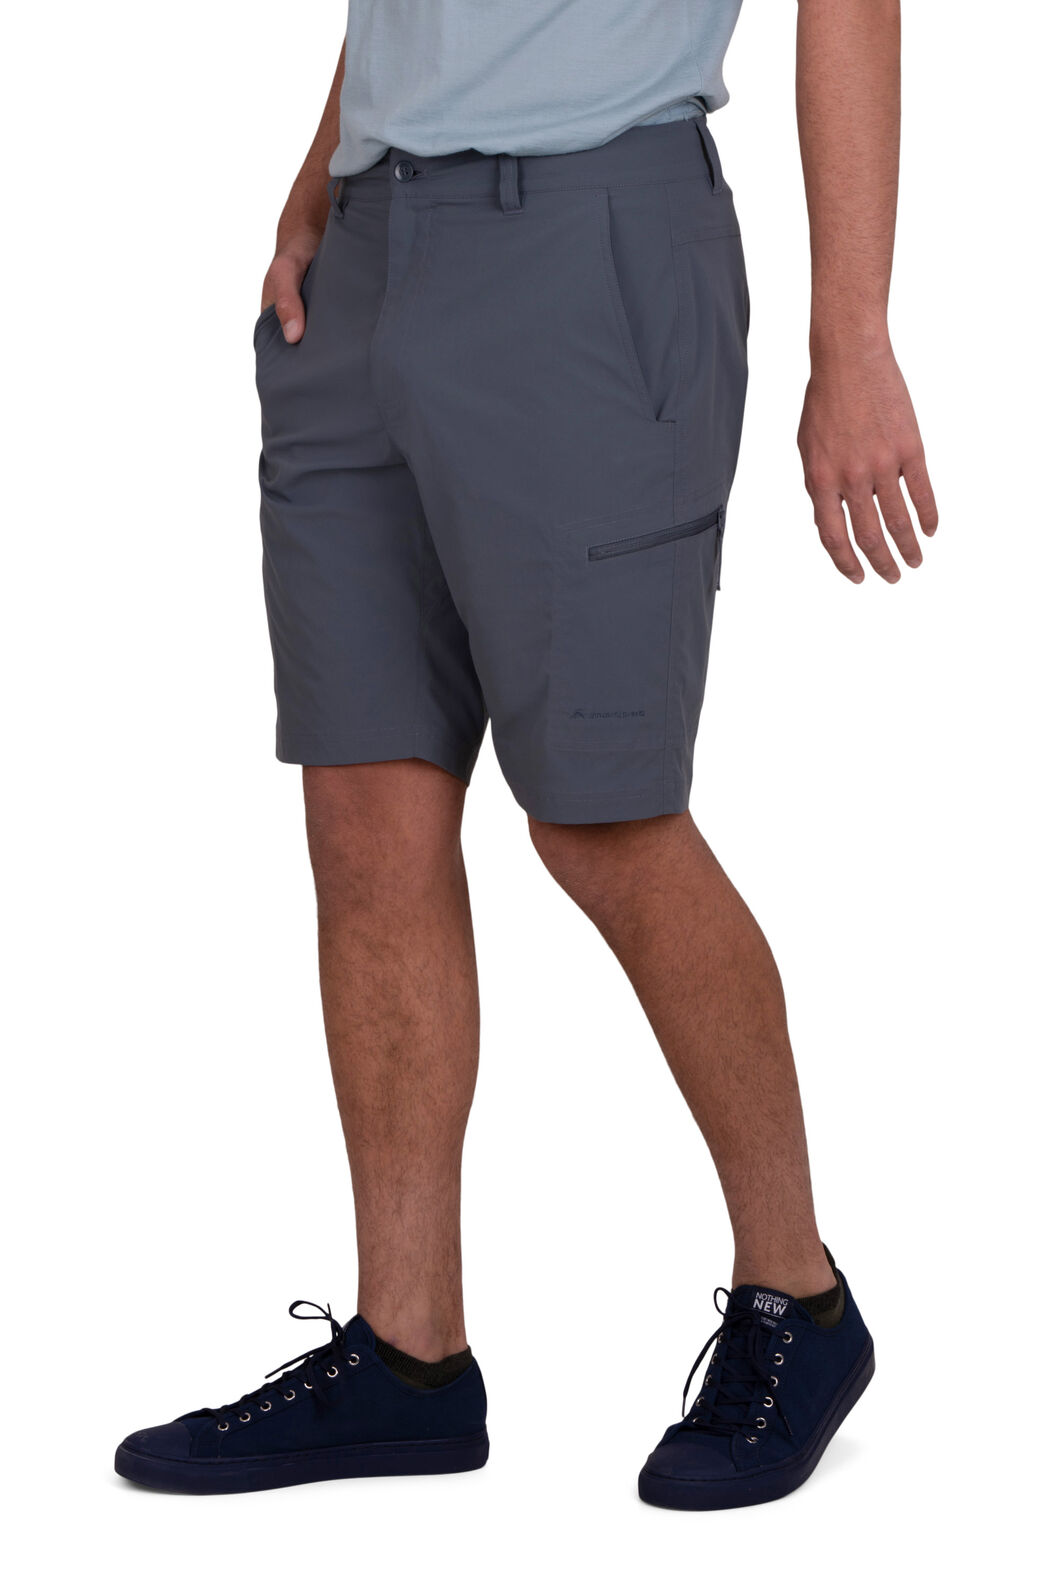 Macpac Men's Drift Shorts